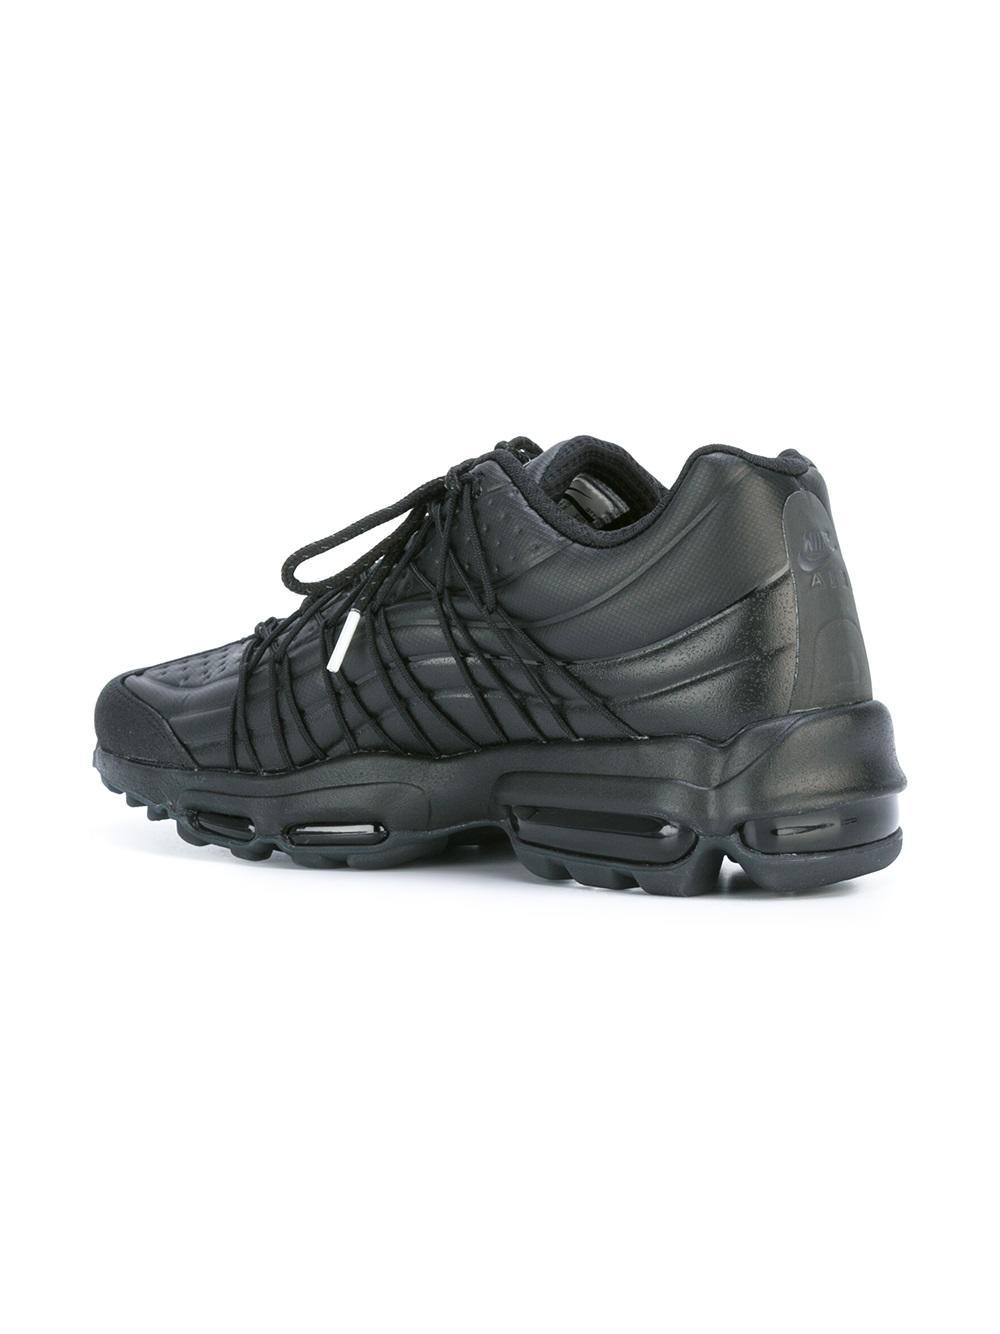 Lyst - Nike Air Max 95 Ultra Se Premium Sneakers in Black for Men